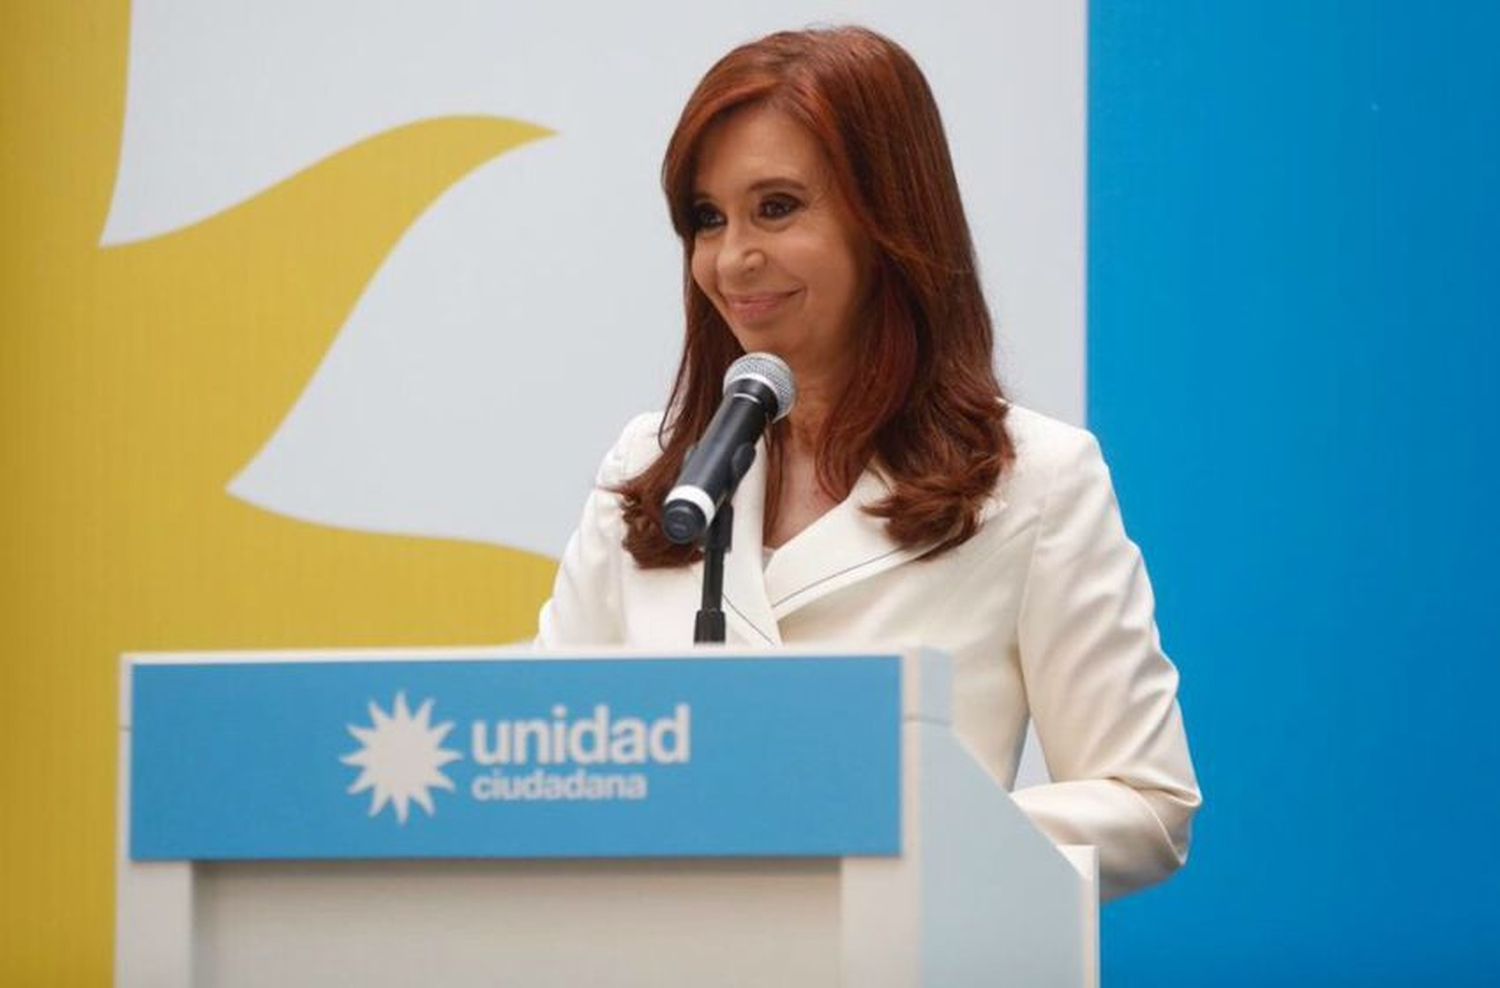 La Justicia pide el desafuero y la detención de Cristina Kirchner